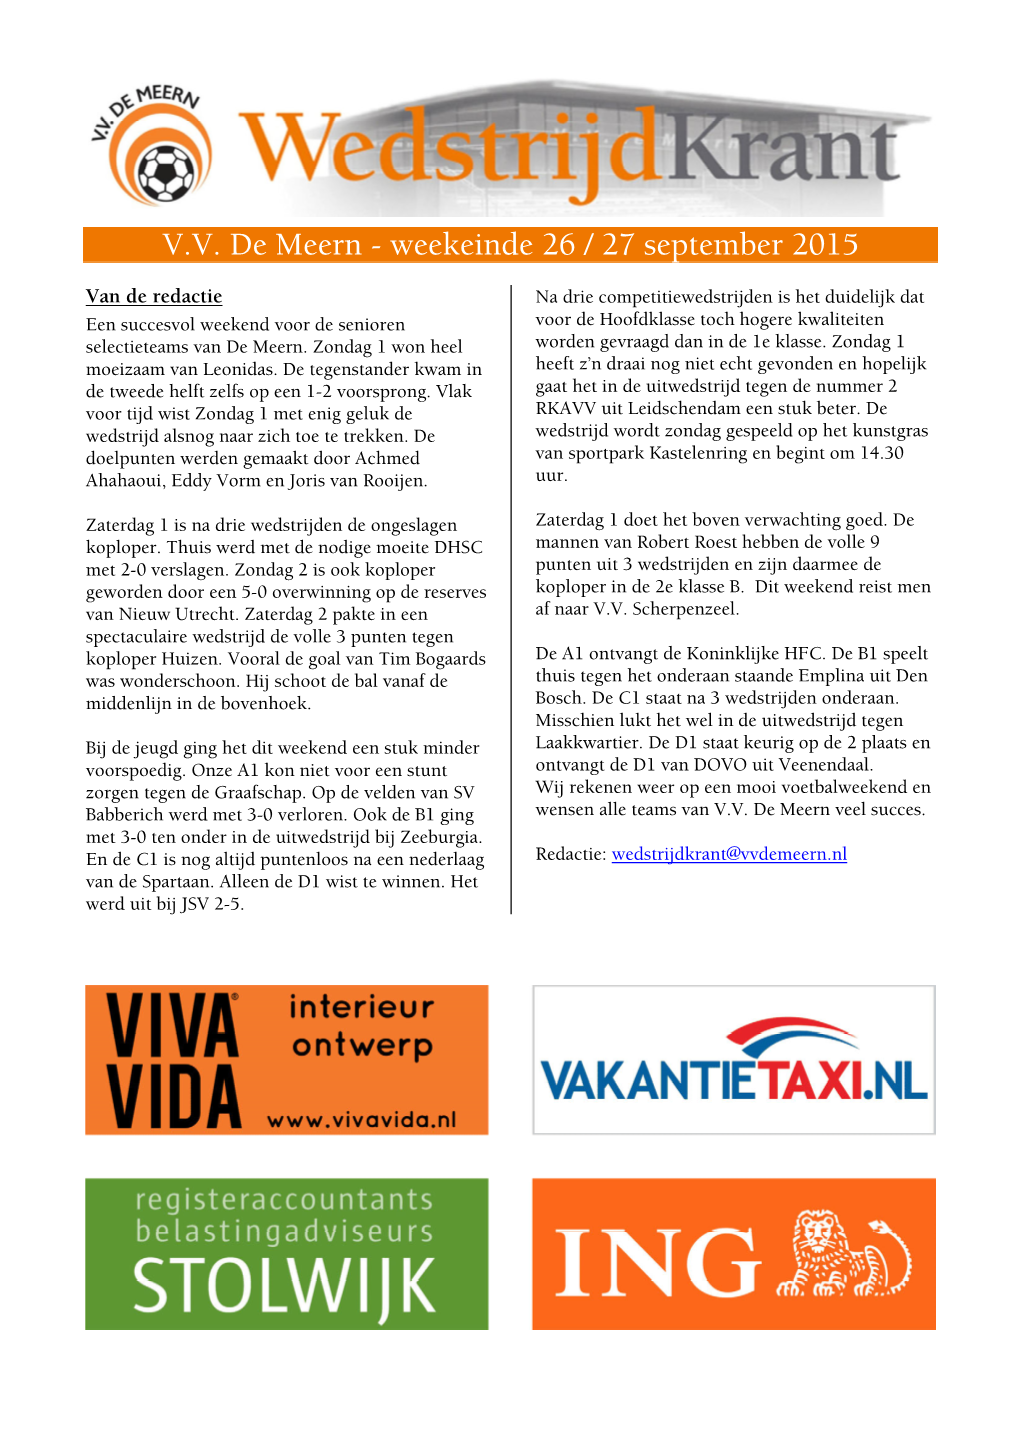 V.V. De Meern - Weekeinde 26 / 27 September 2015